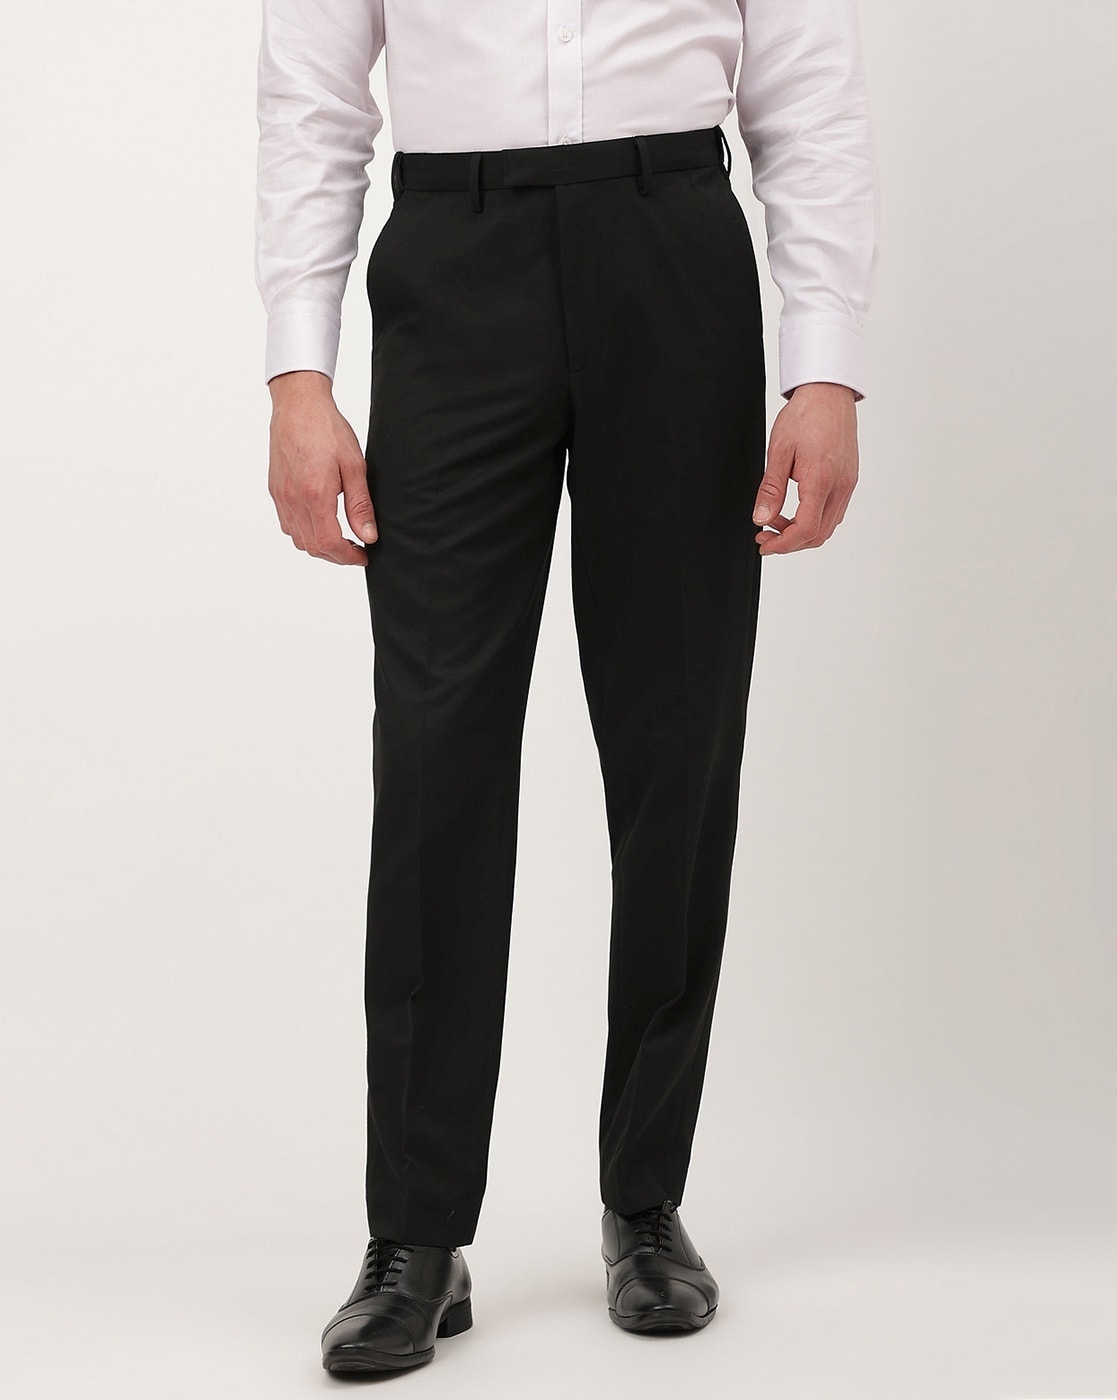 Oatmeal Colour Formal Trousers for Men - Elite Trouser by Aristobrat